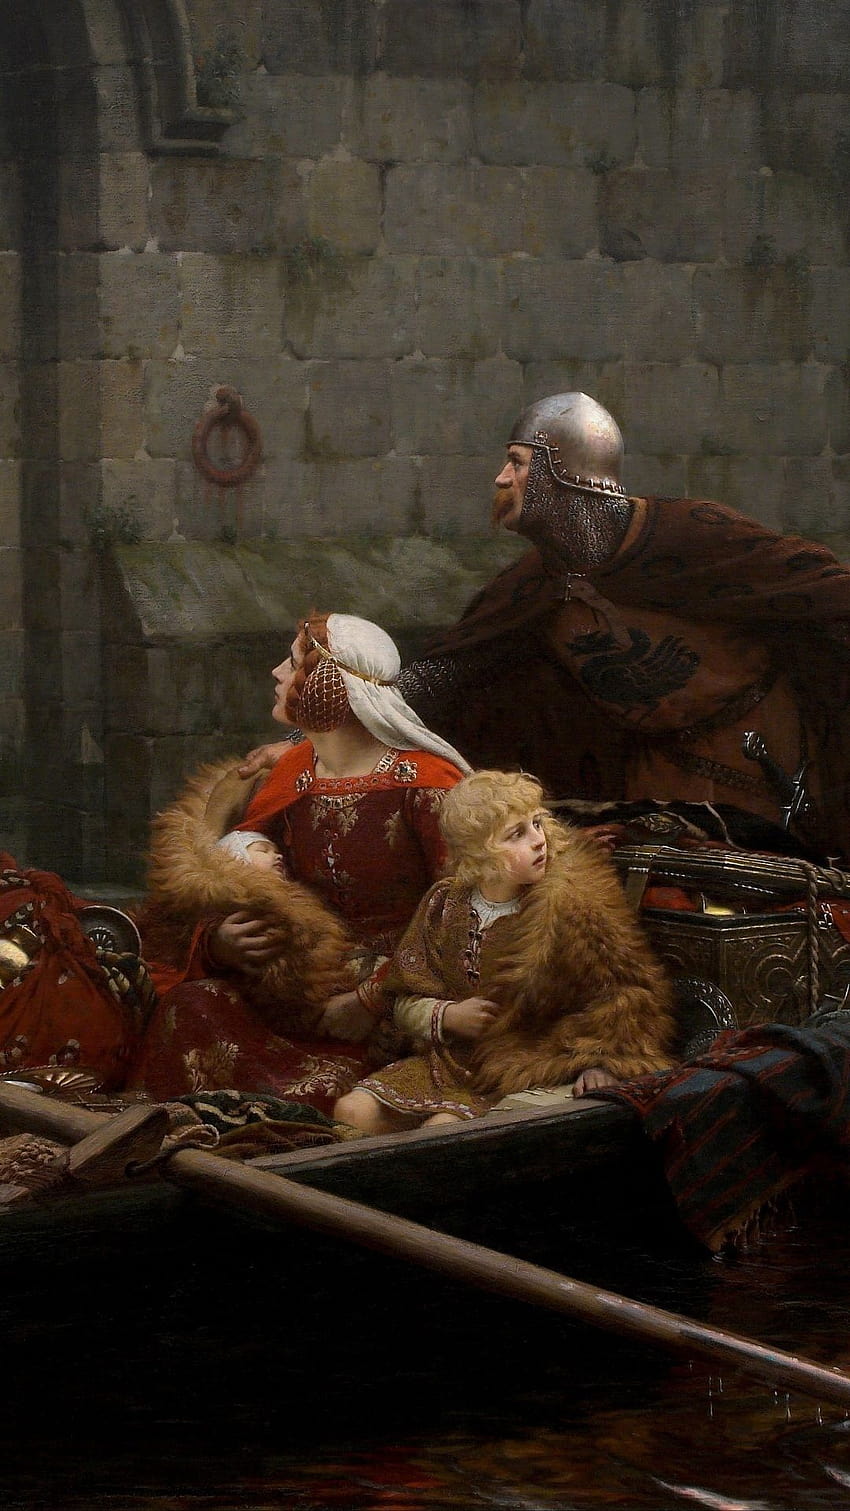 1080x1920 edmund blair leighton, angielski malarz, w czasach zagrożenia, średniowiecze, romantyzm, przed Tapeta na telefon HD